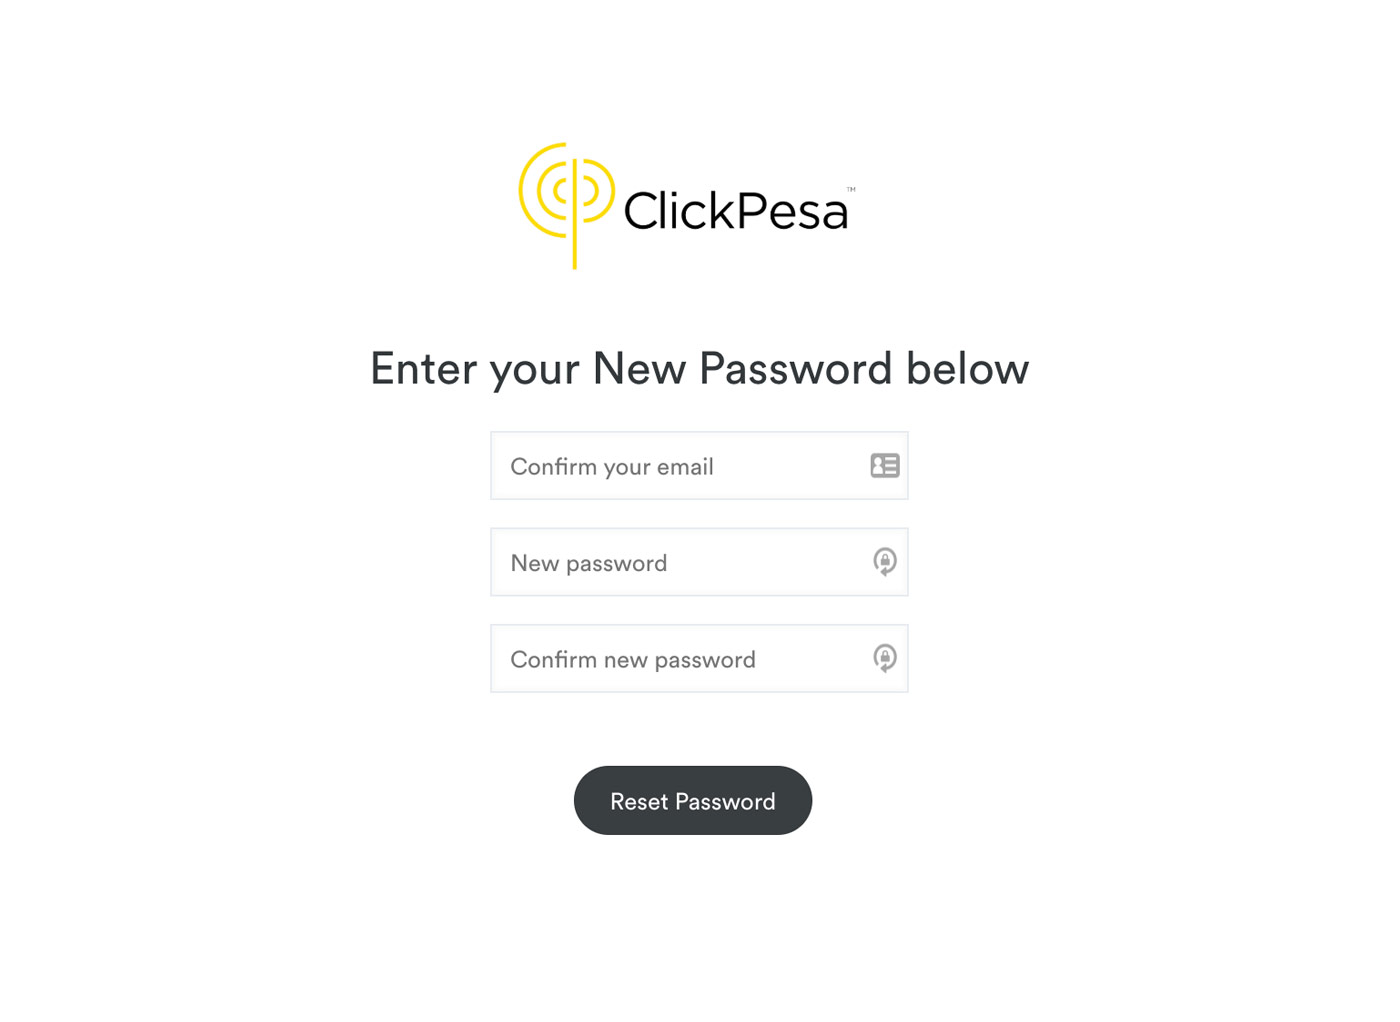 reset password screen